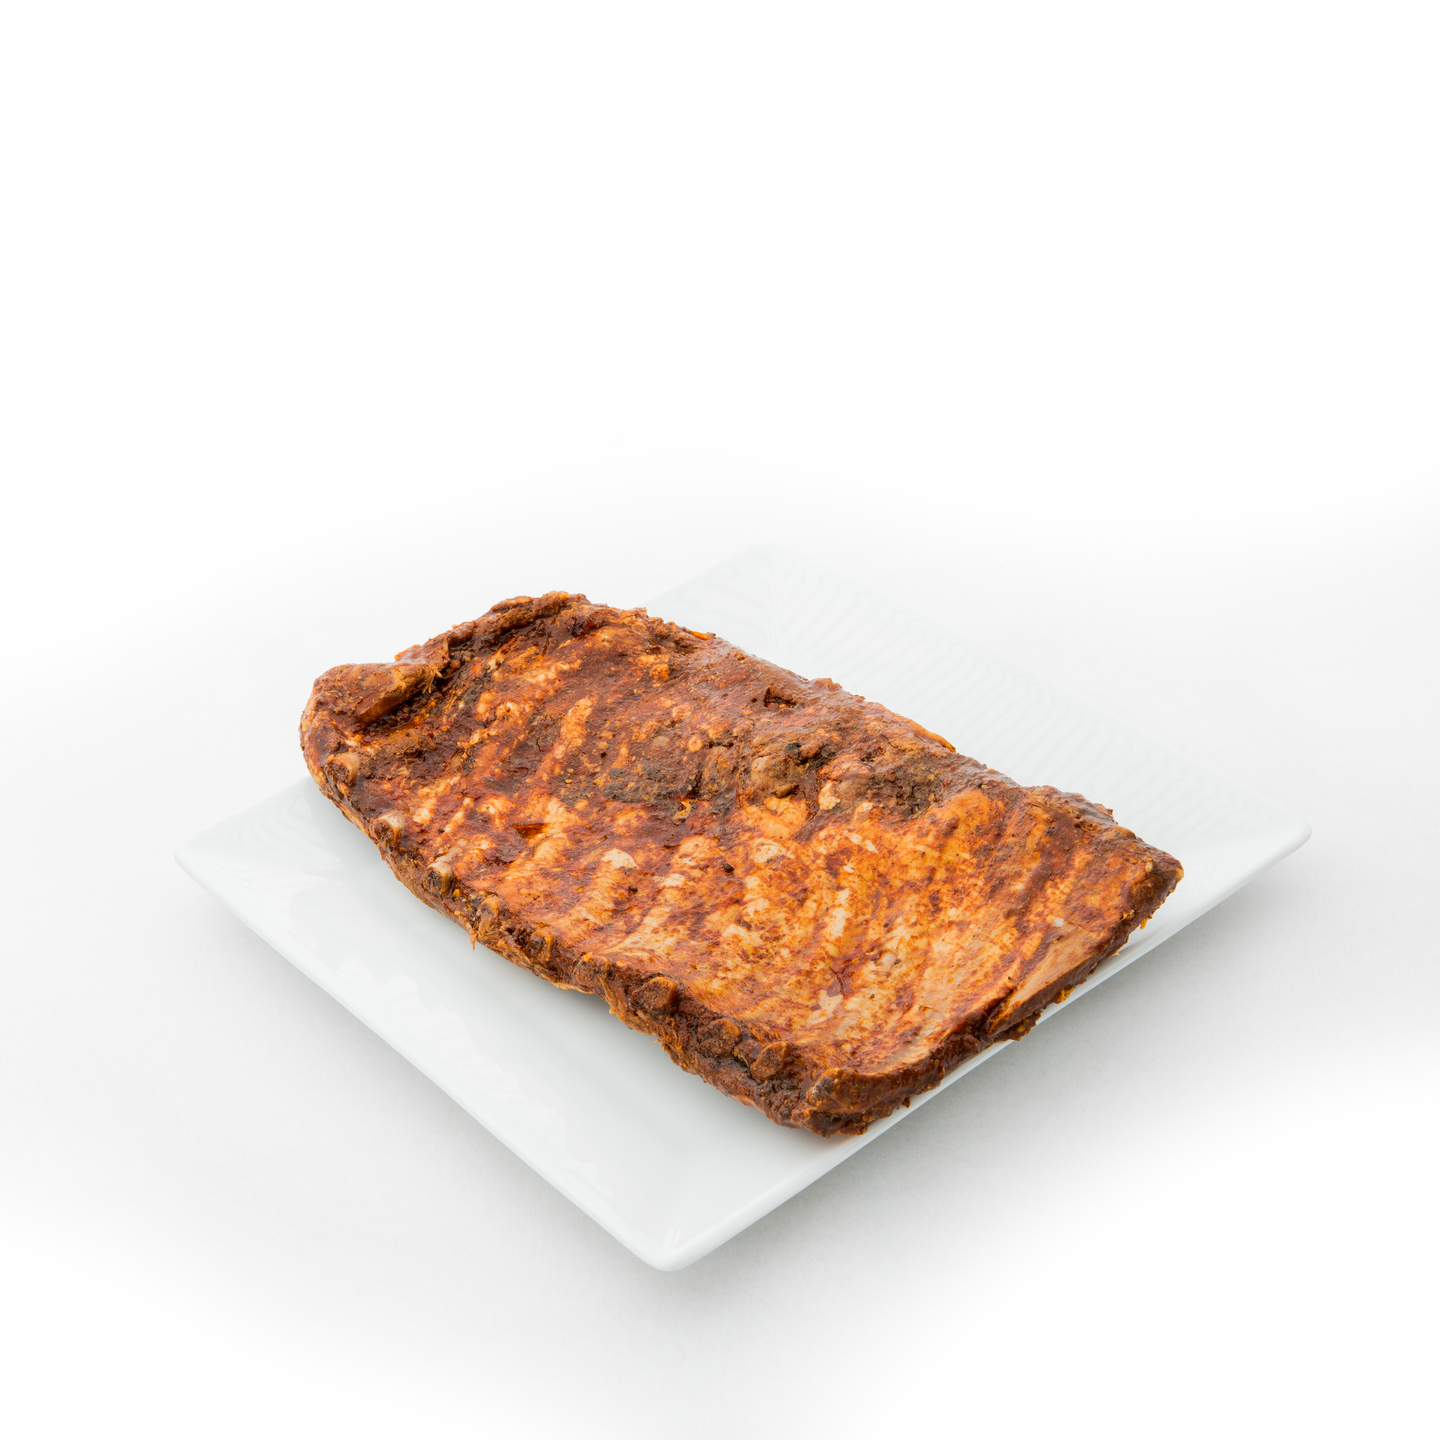 HKScan Pro BBQ Spare ribs 7x n 900g pakaste — HoReCa-tukku Kespro